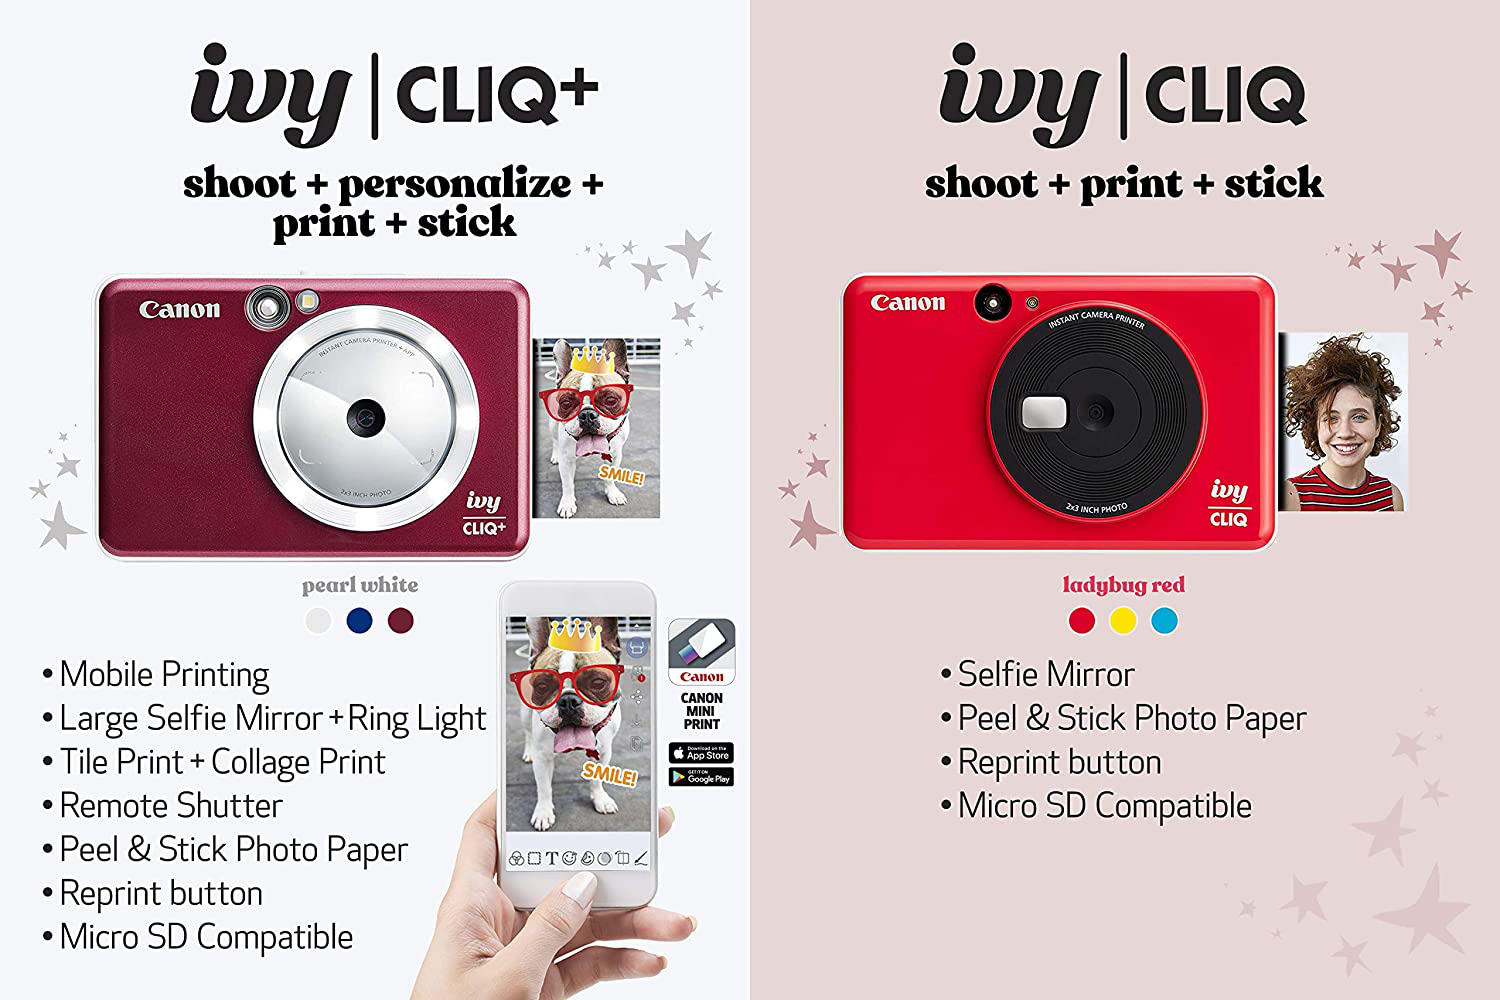 The Canon Ivy Cliq+ 2 Can Print Circular Photos